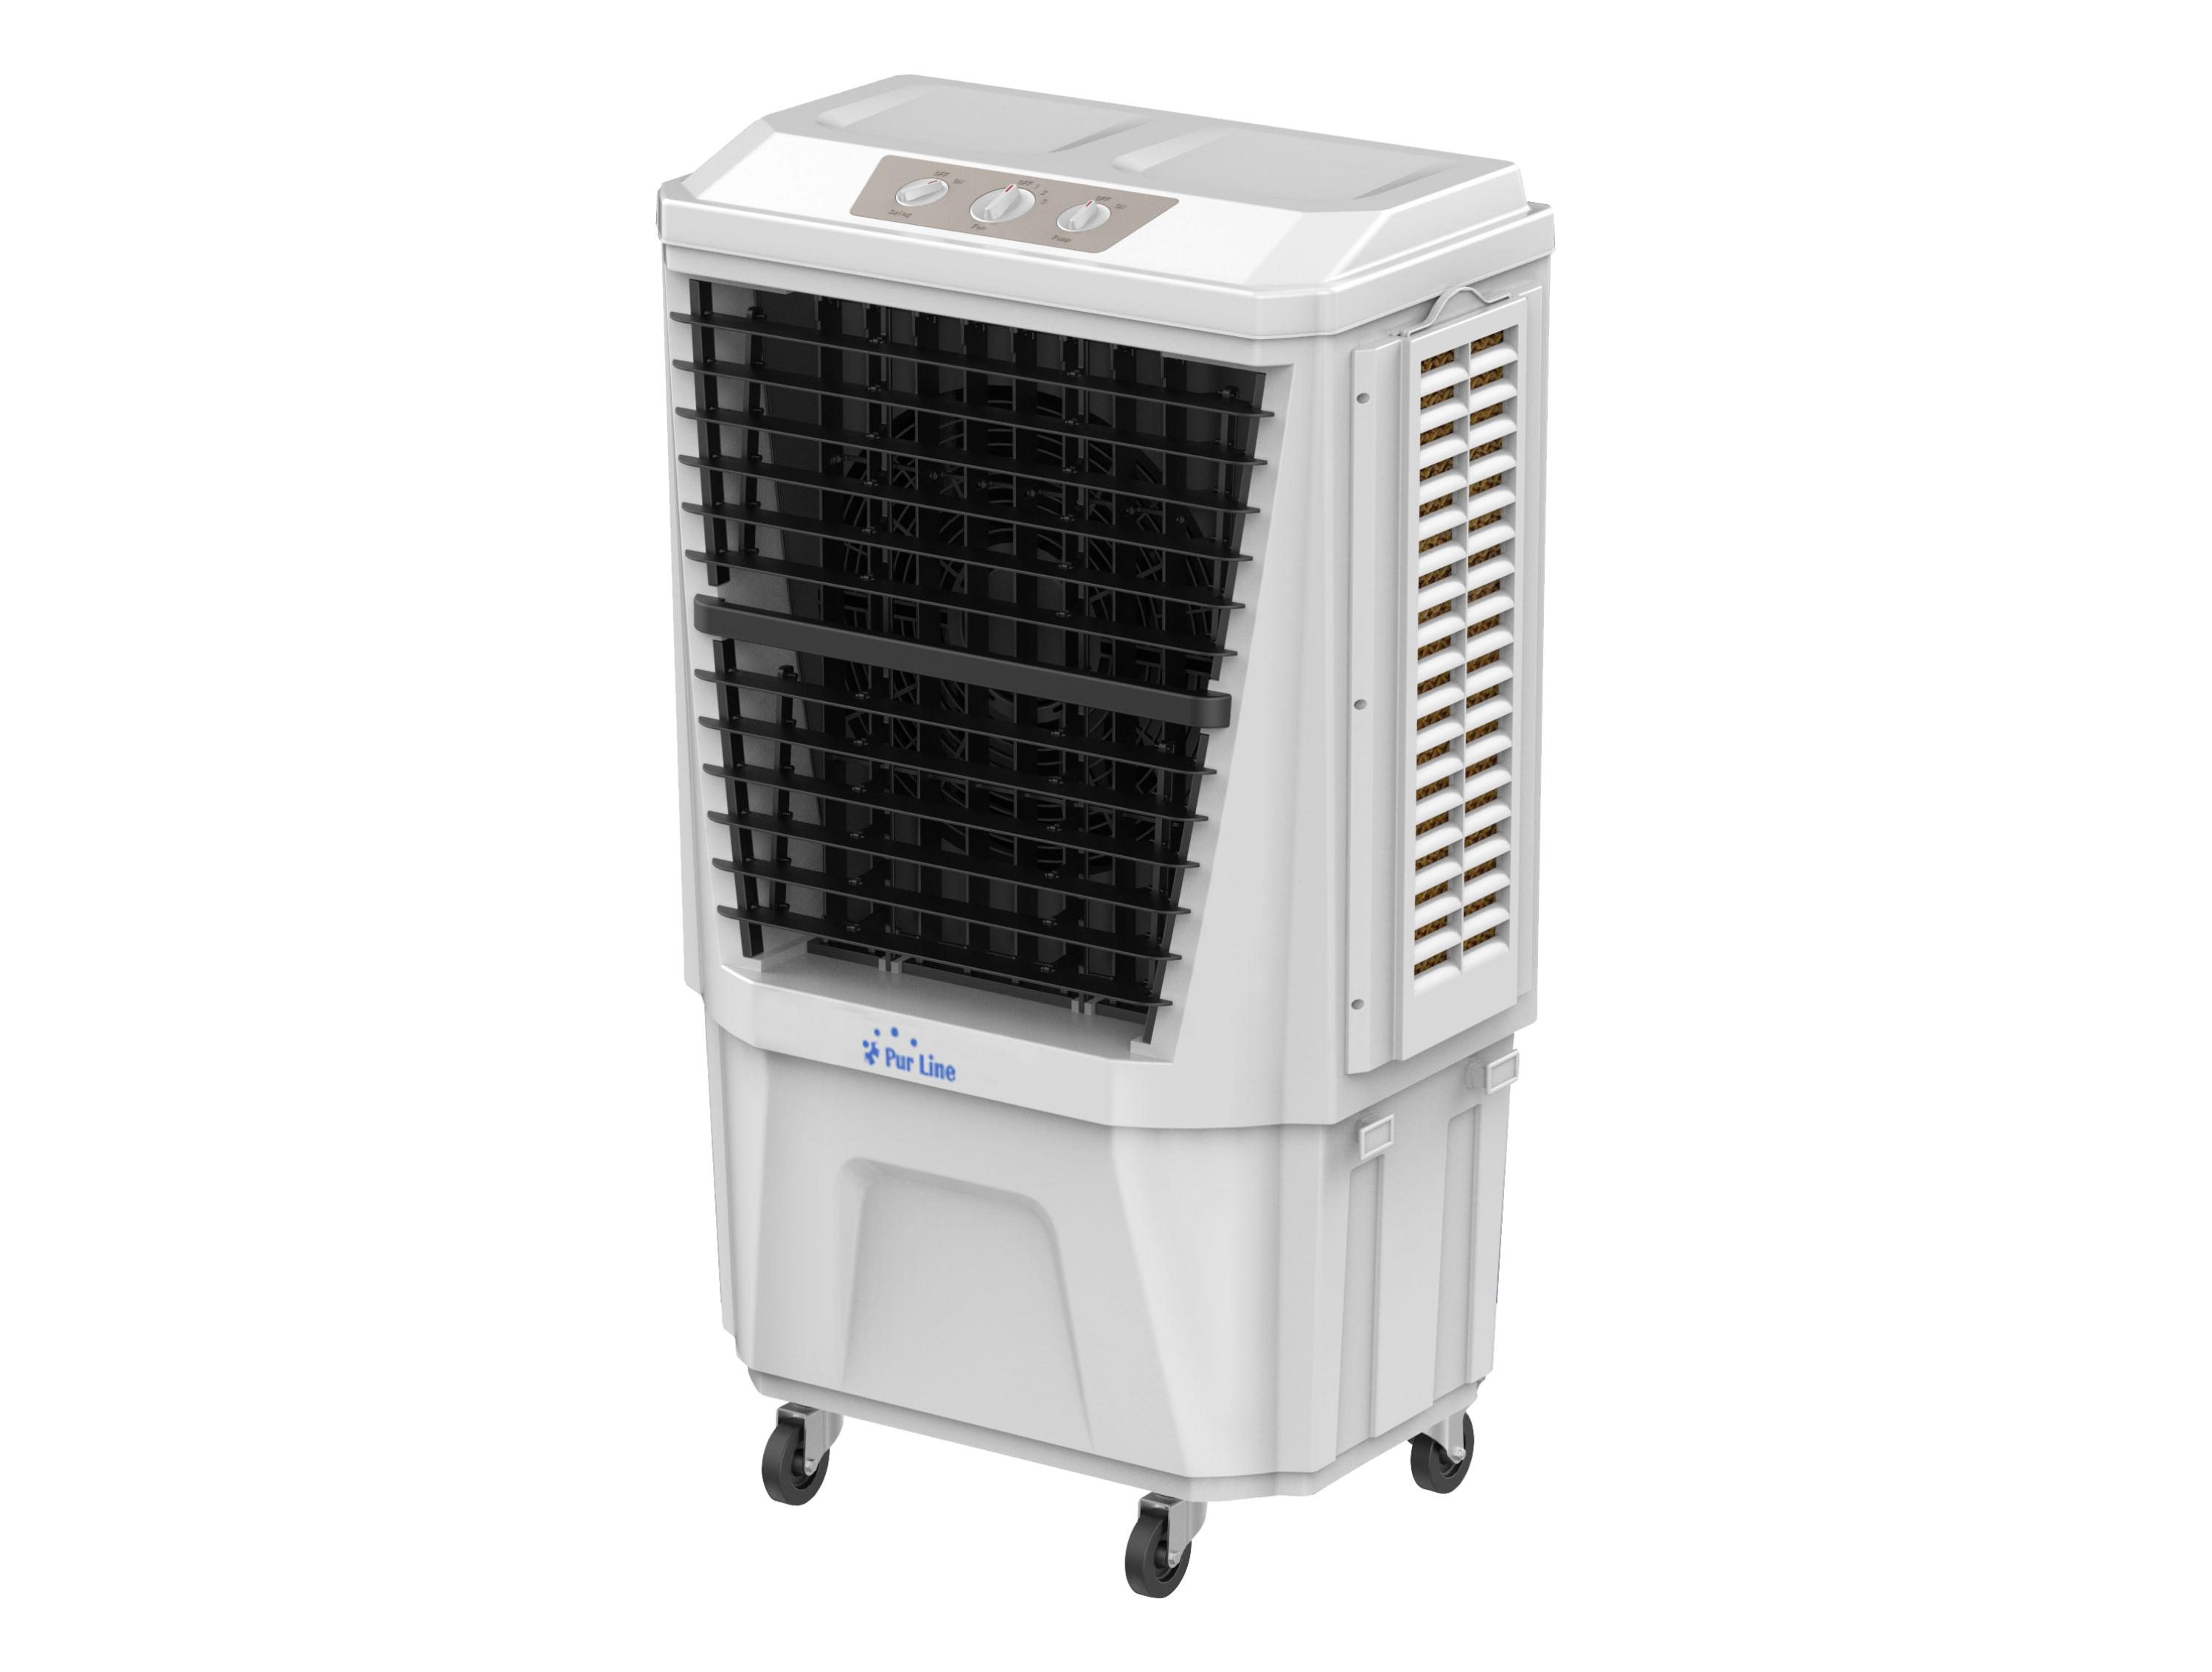 PURLINE Verdunstungskühler mit Geschwindigkeiten 3 hohem und Zeitschaltuhr Luftkühler Durchfluss